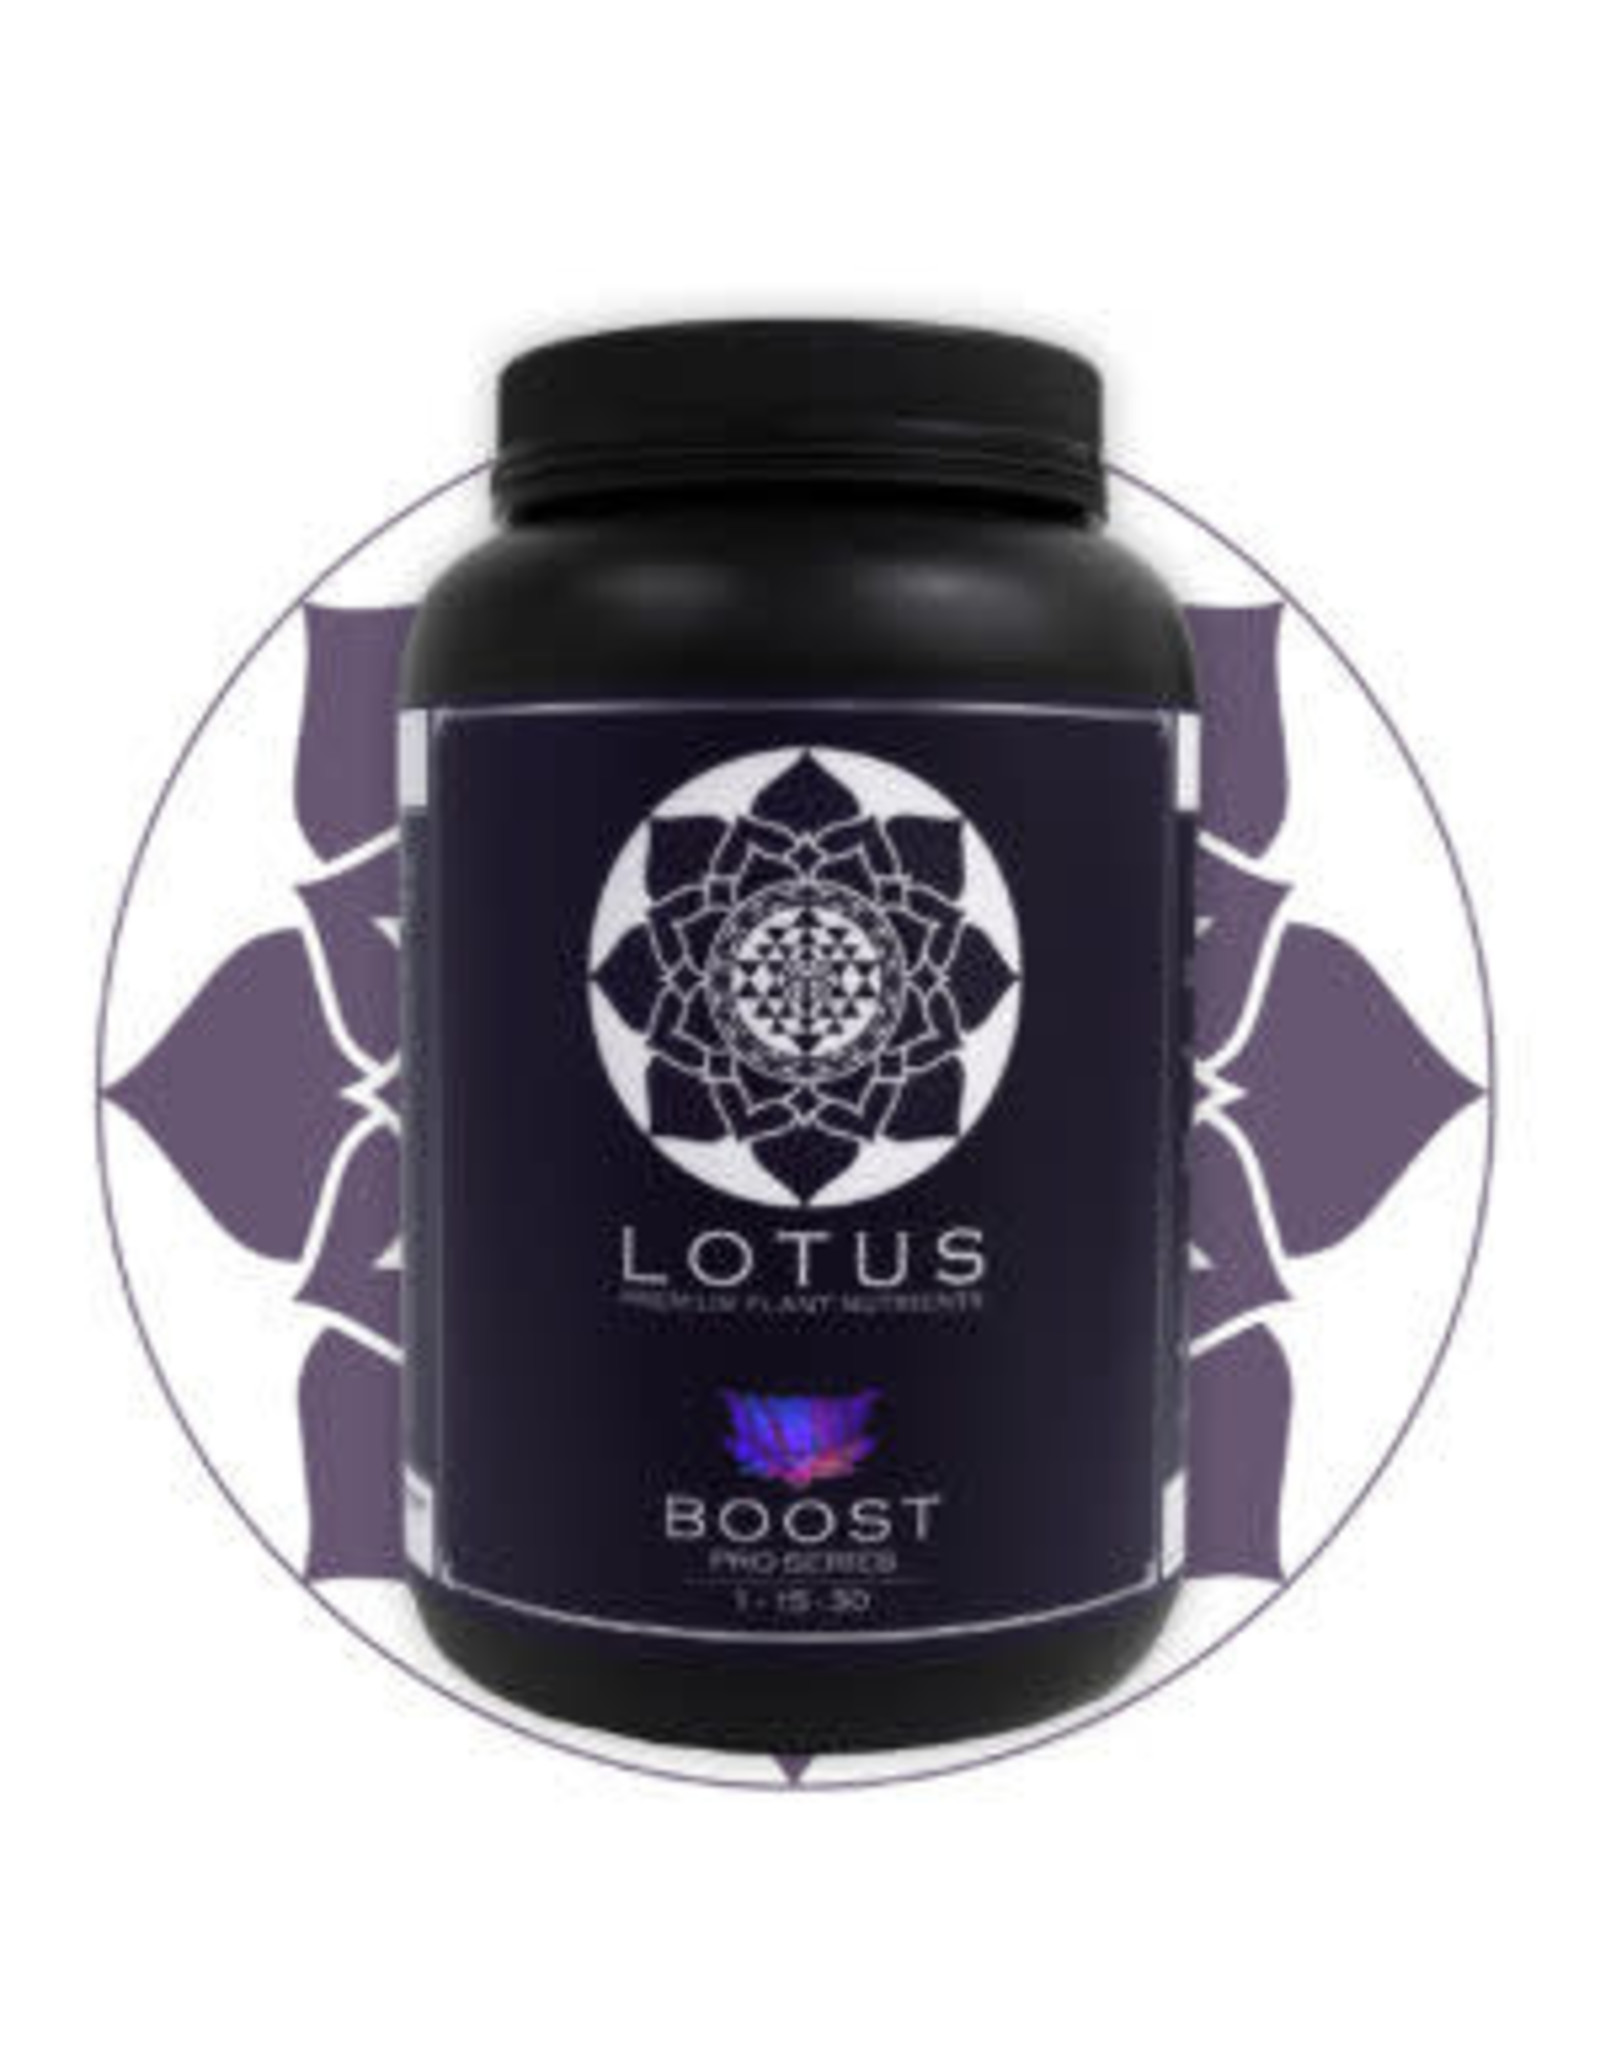 Lotus Lotus Pro Series Boost 18oz